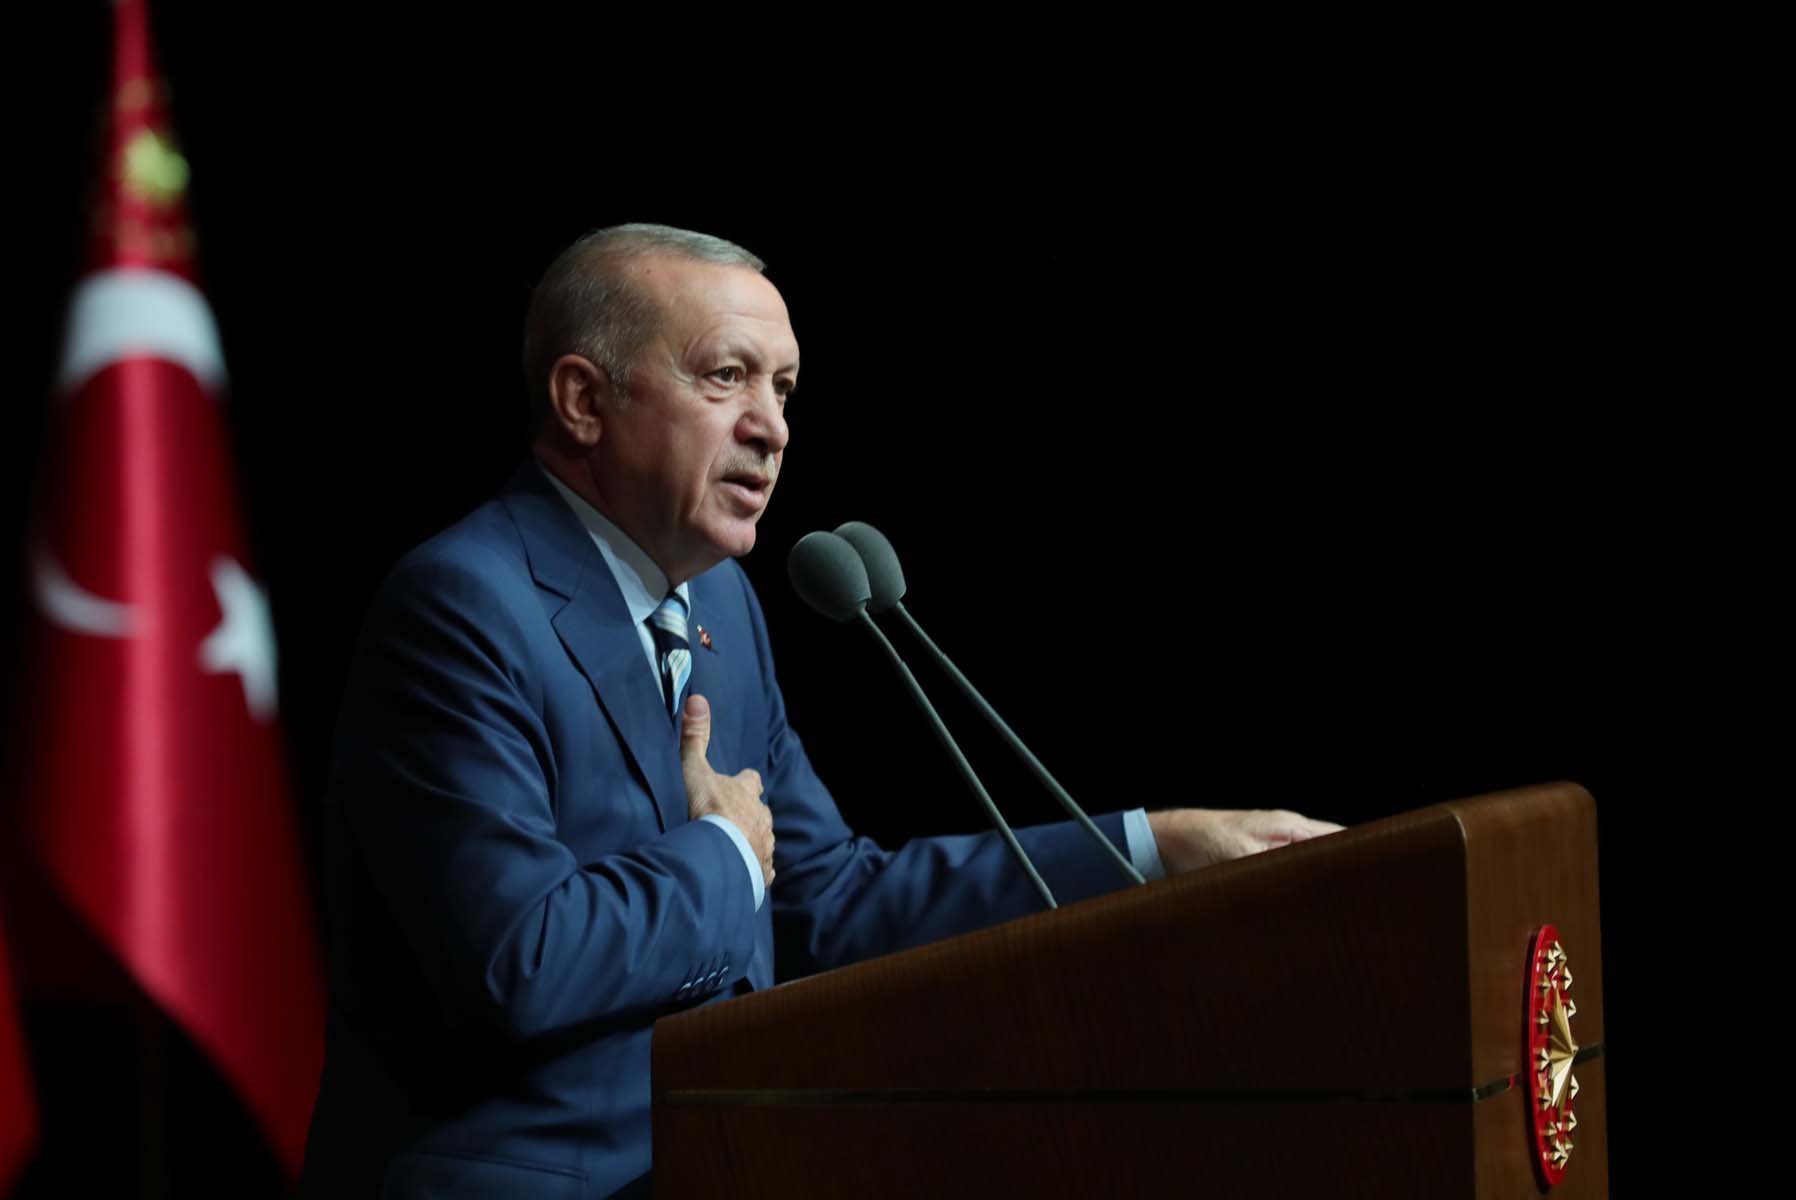 Alman gazeteci, köşesini Cumhurbaşkanı Erdoğan'a ayırdı: Dünya İstanbul'a bakıyor ve barış umuyor